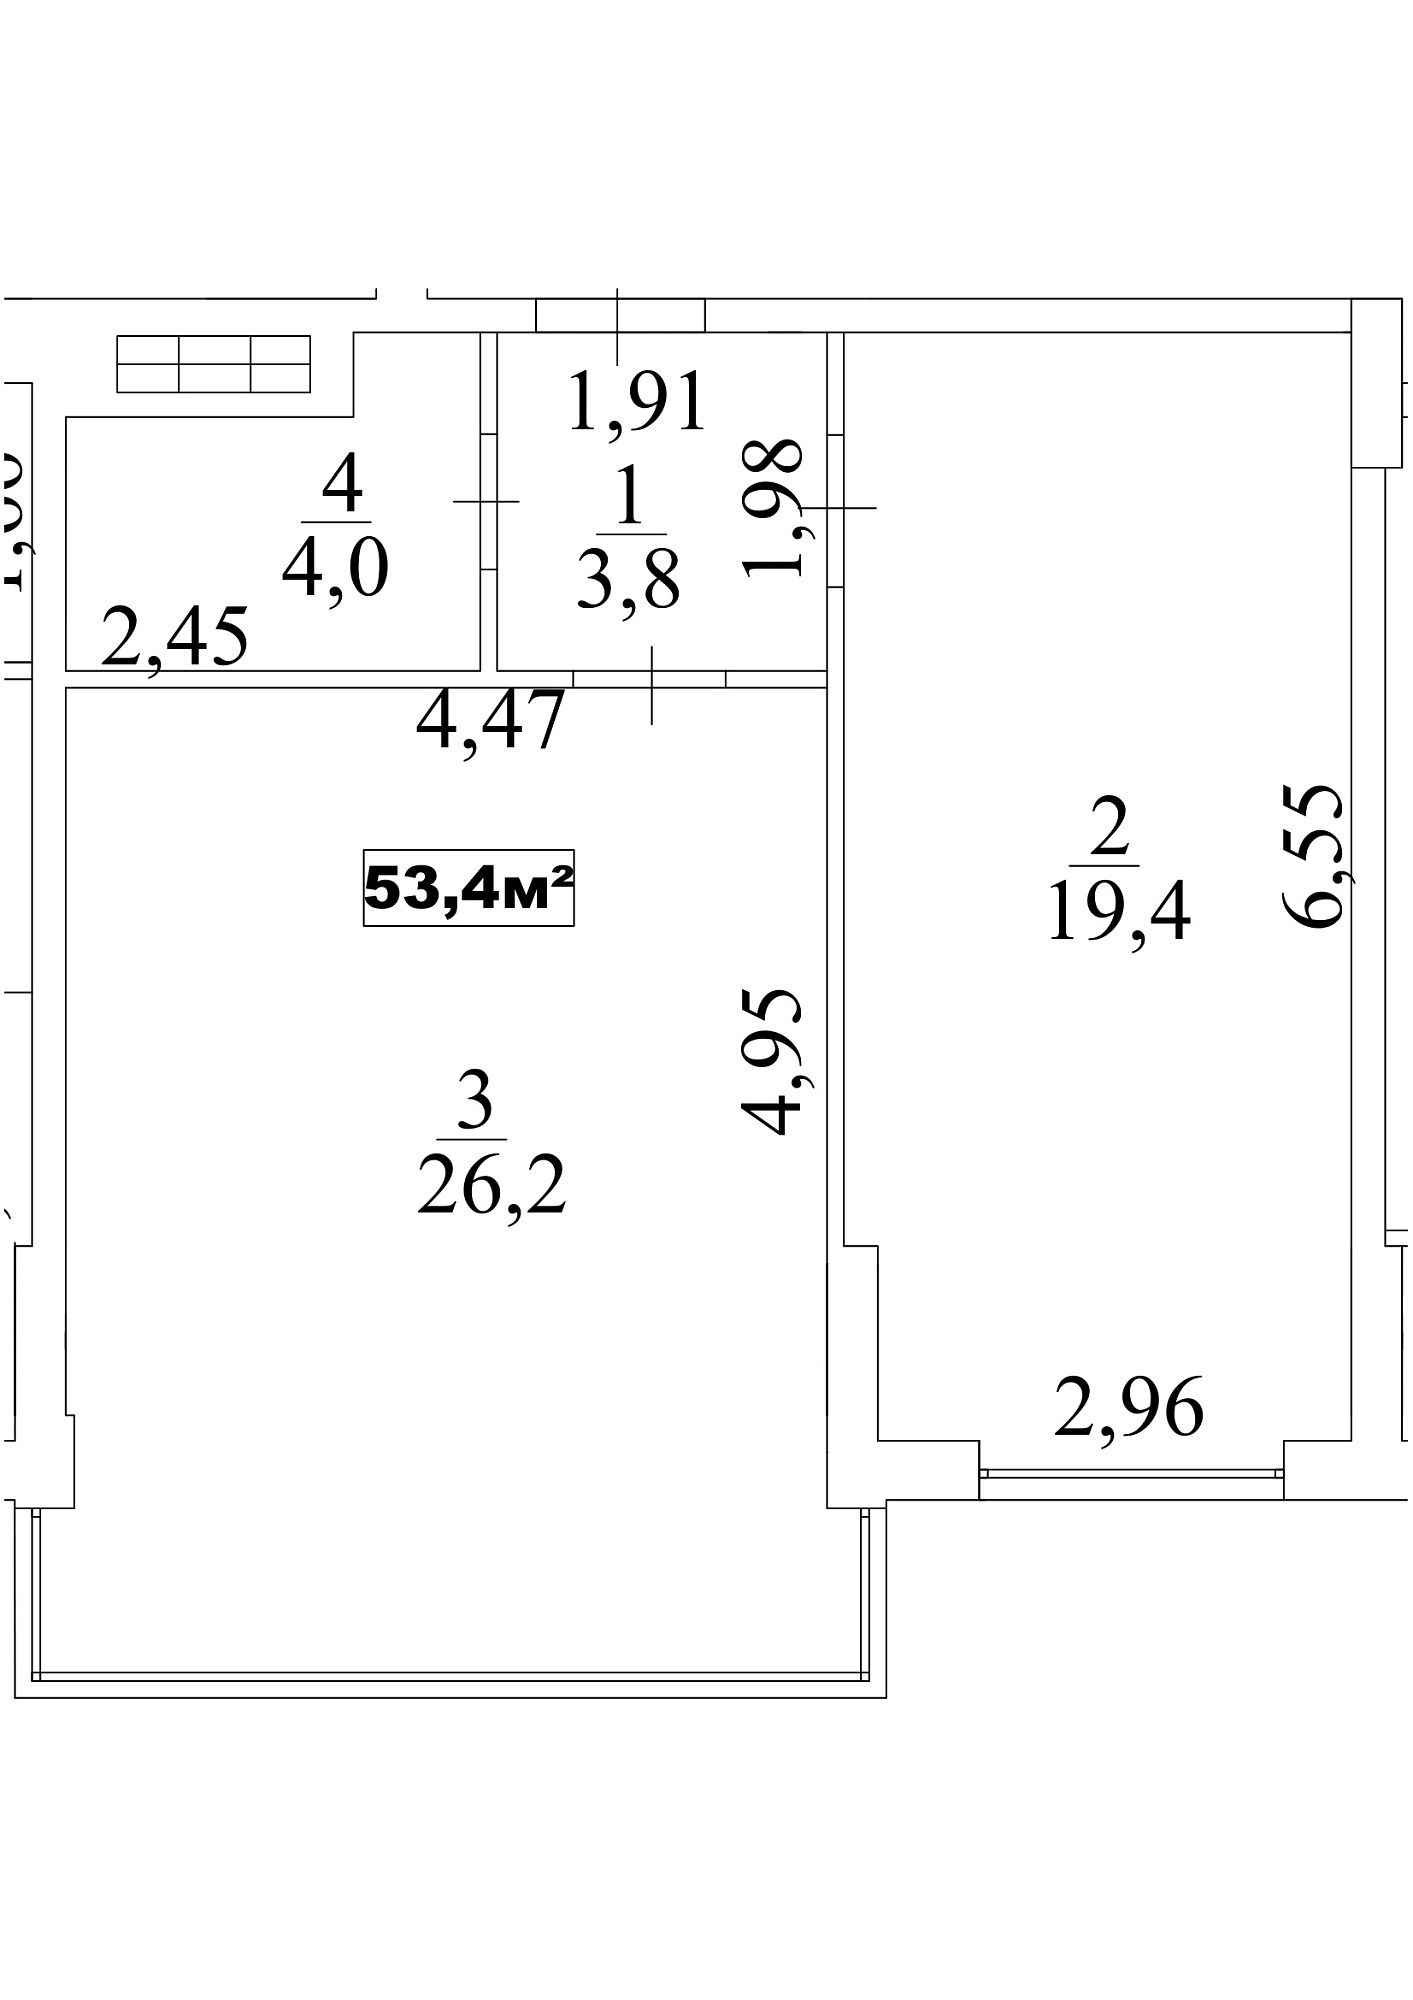 Планировка 1-к квартира площей 53.4м2, AB-10-05/00044.